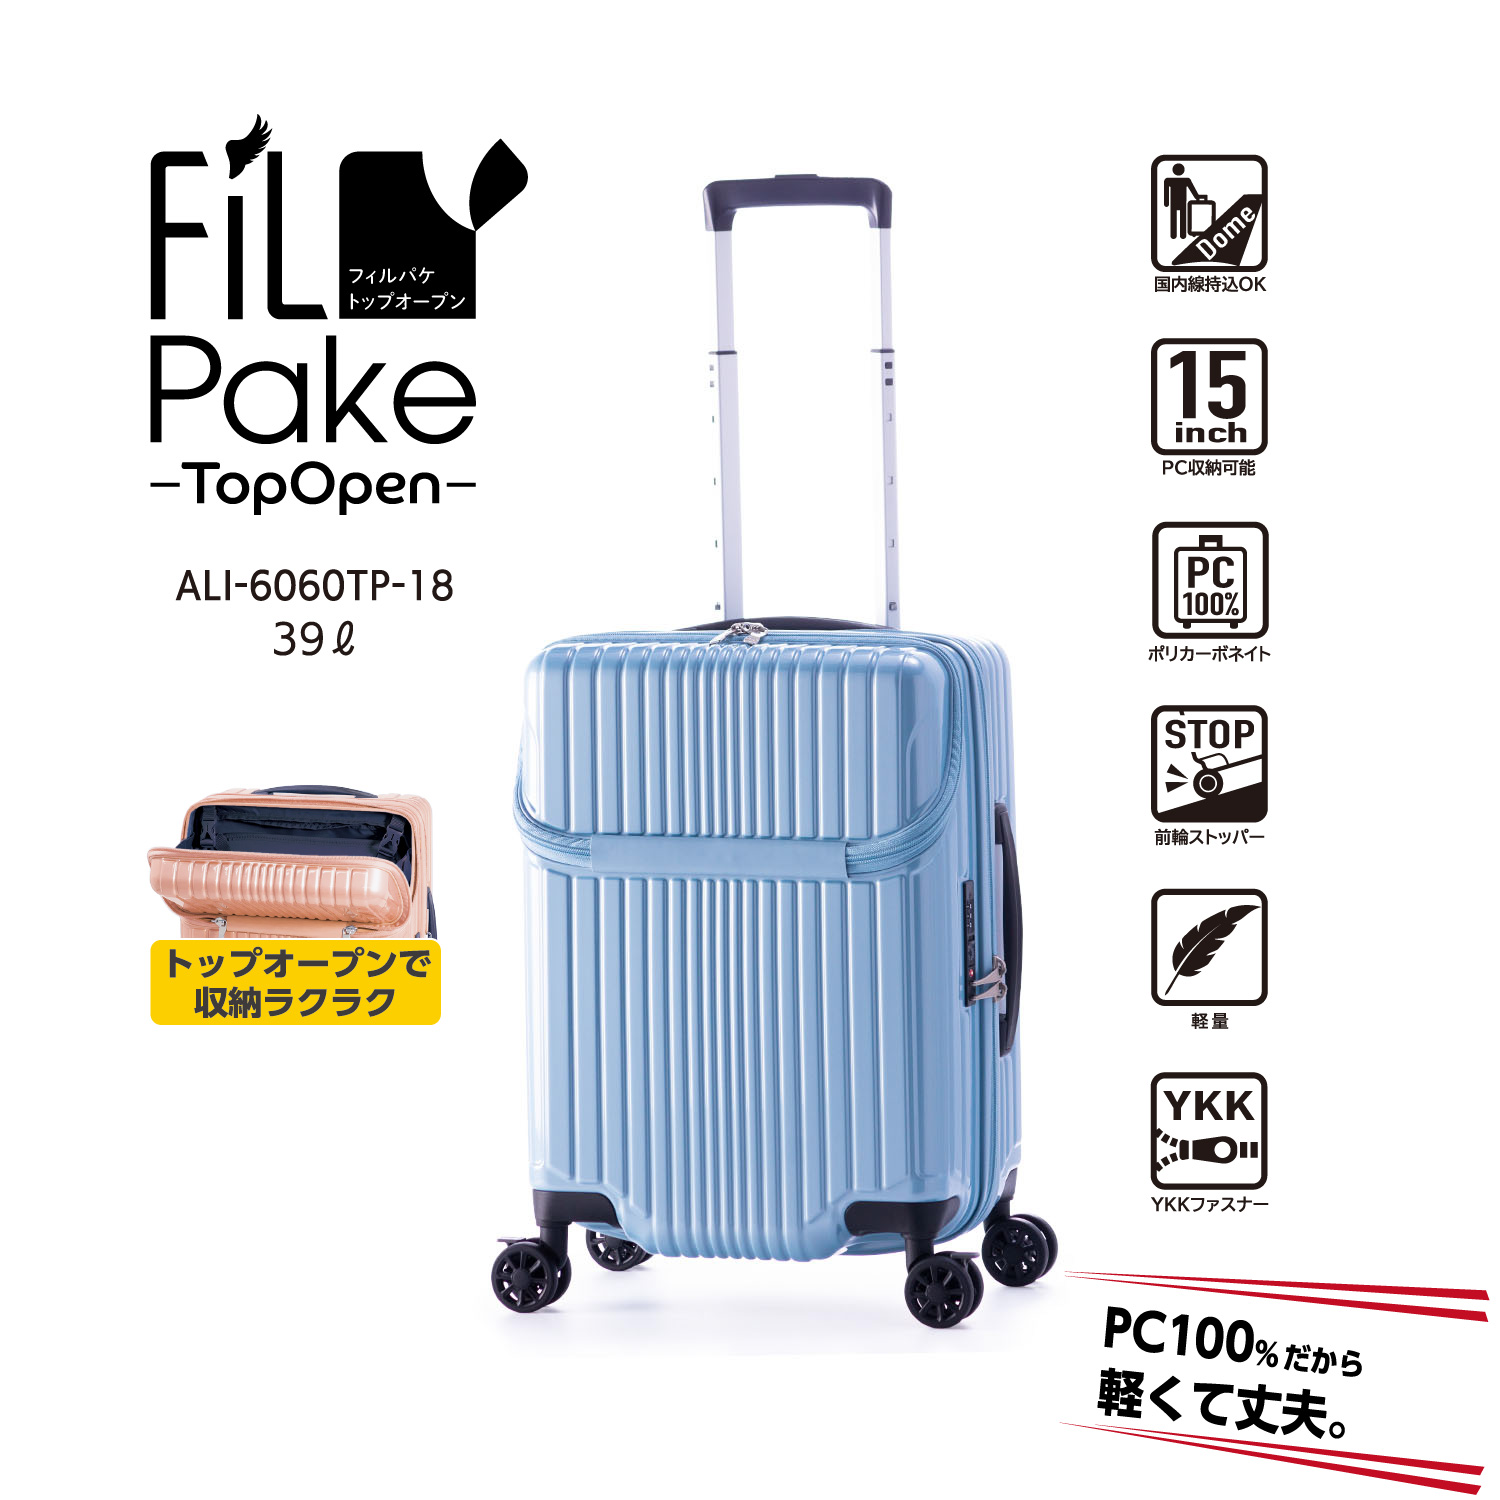 拡張 | アジア・ラゲージ 公式サイト | Asia Luggage Inc.